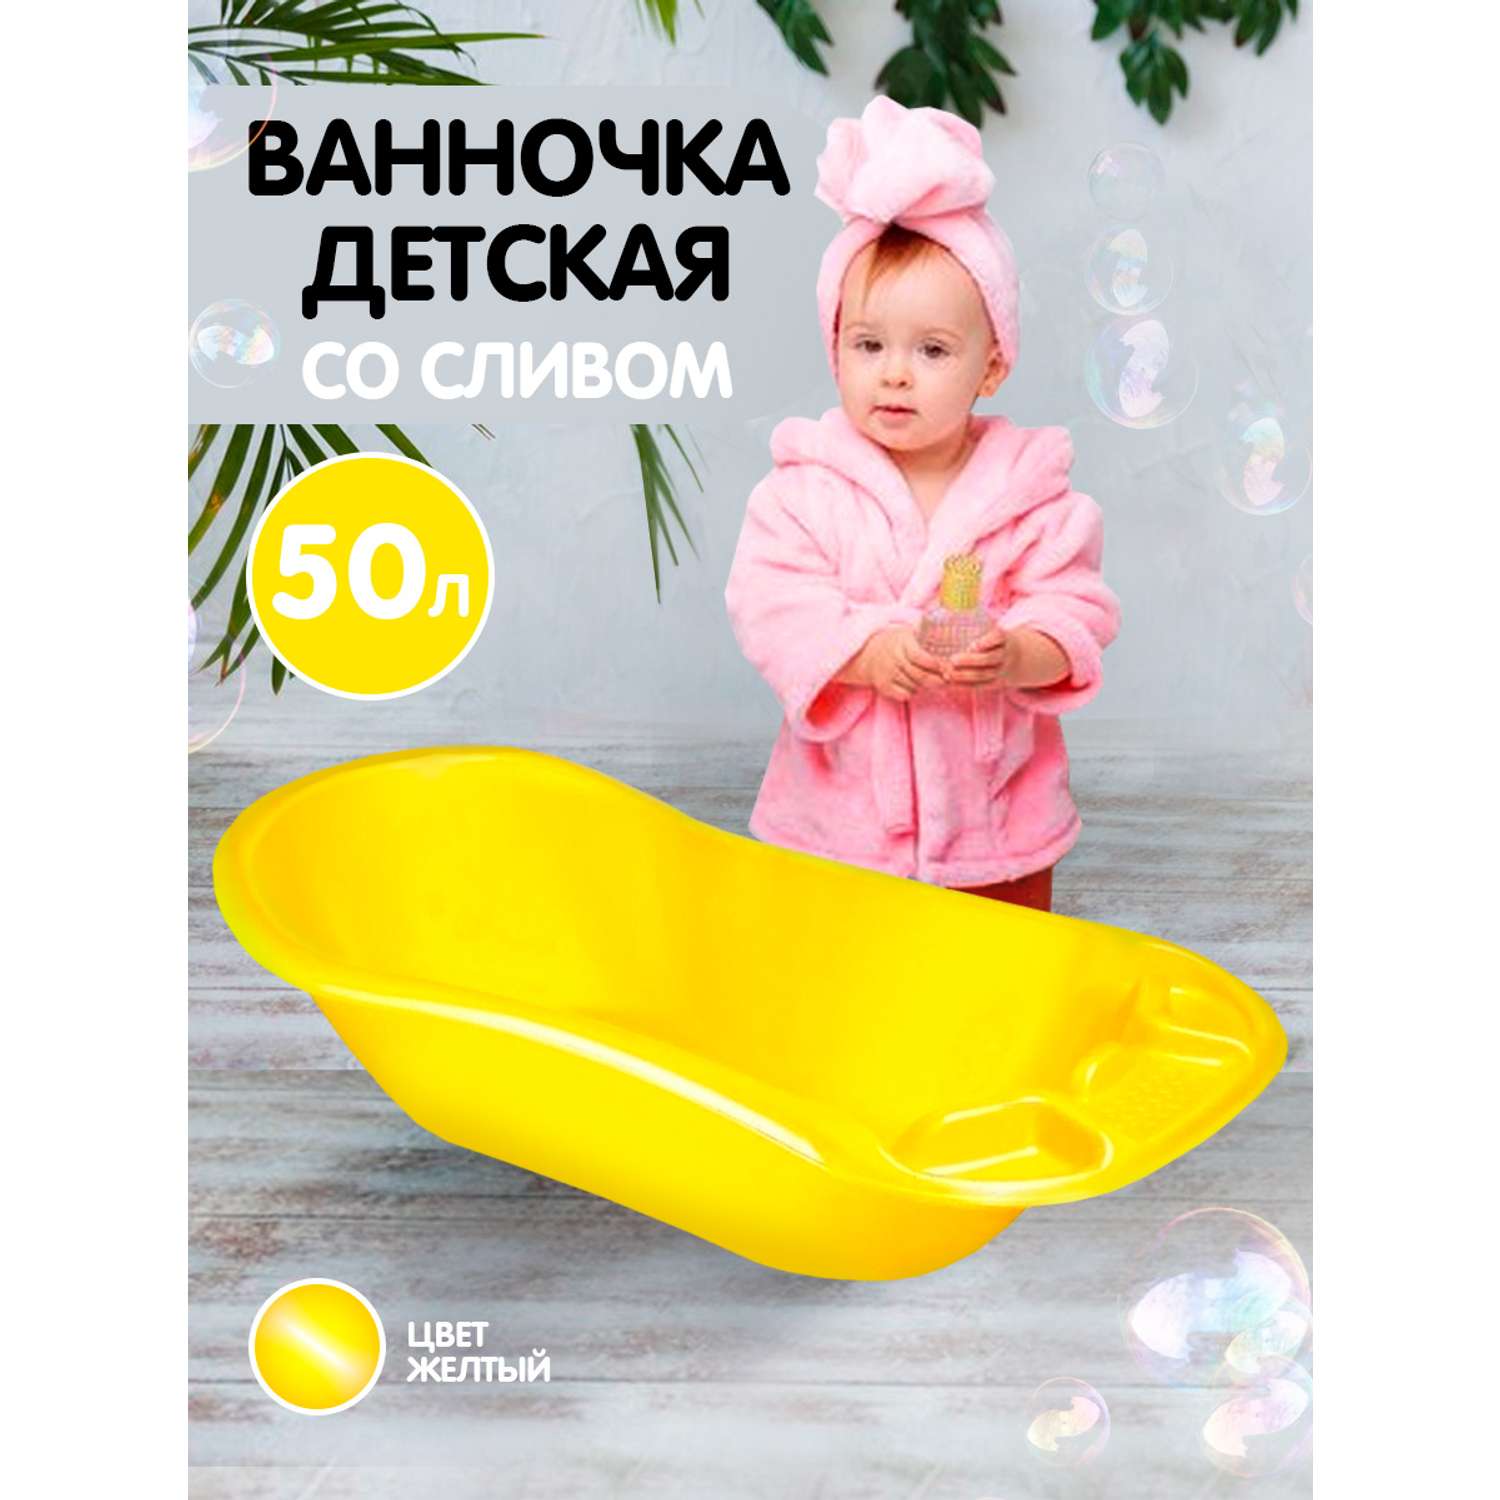 Ванна детская elfplast для купания со сливным клапаном желтый 50 л - фото 1